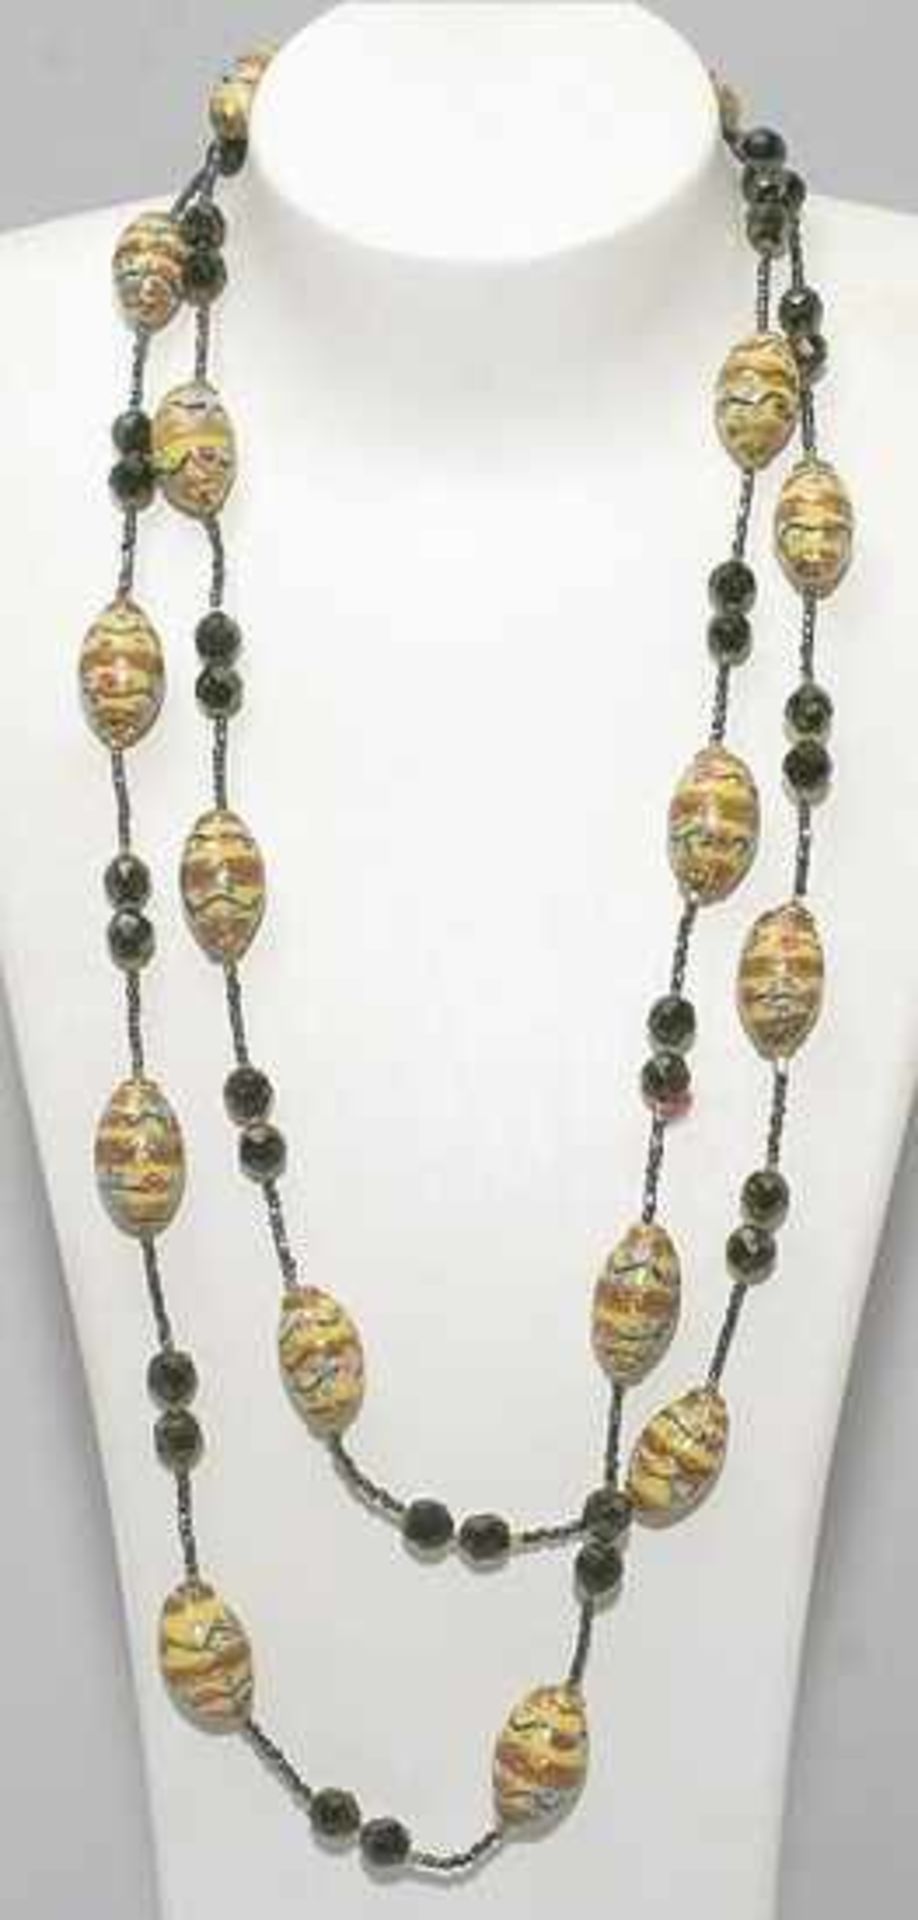 Halskette, Murano, 50er Jahre, gefertigt aus ovioden, polychromen Glasperlen